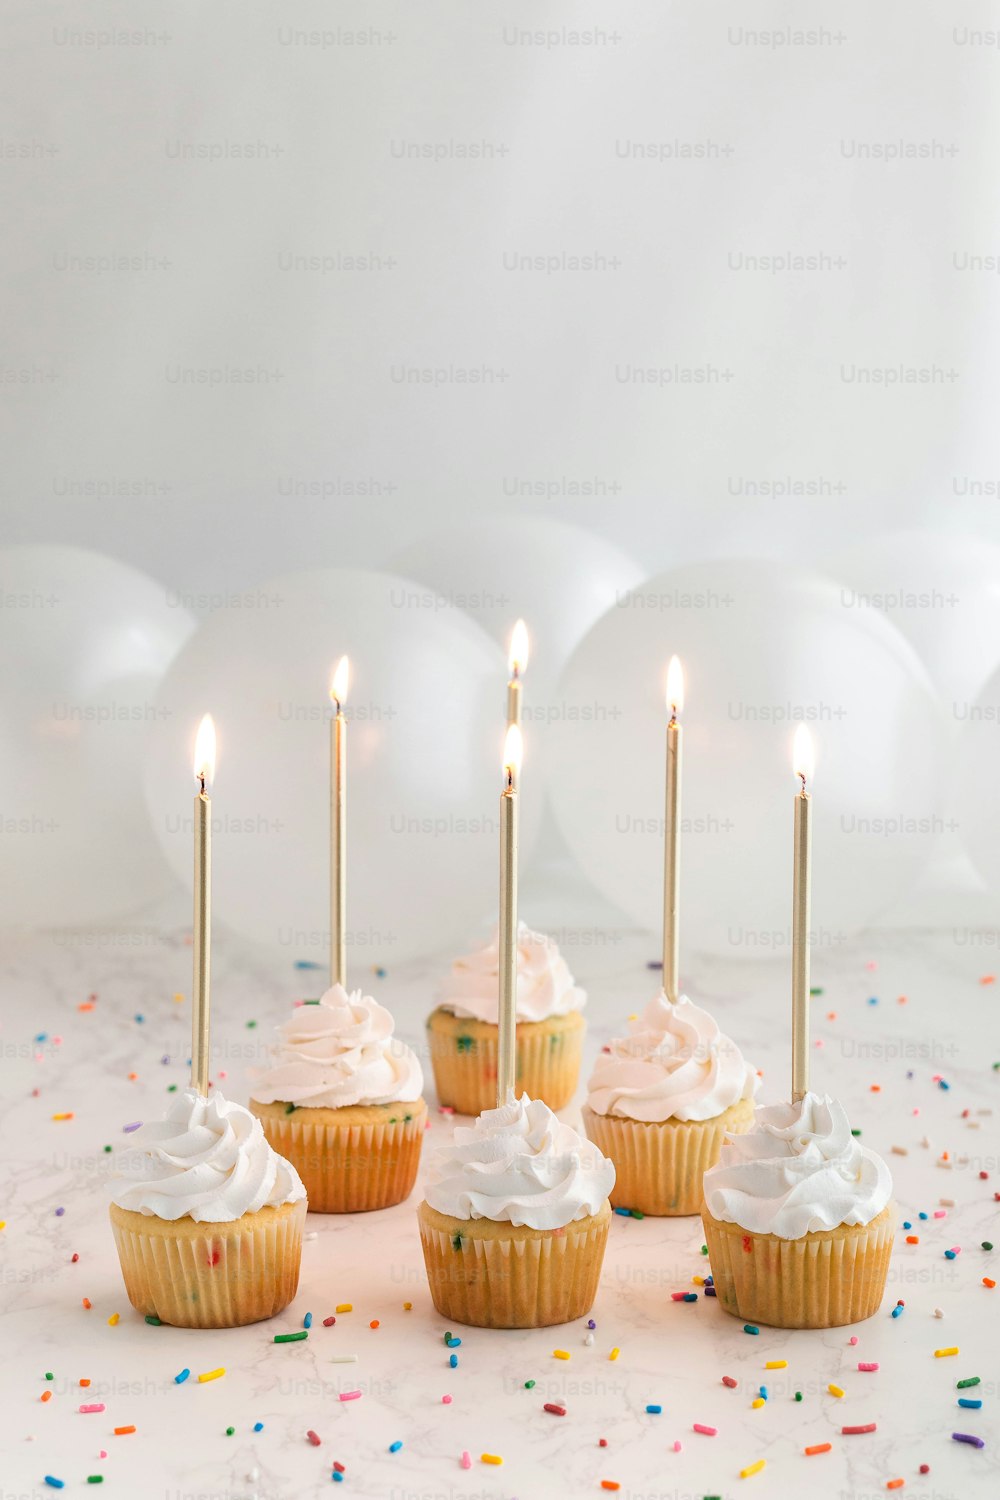 un gruppo di cupcakes con glassa bianca e candele accese